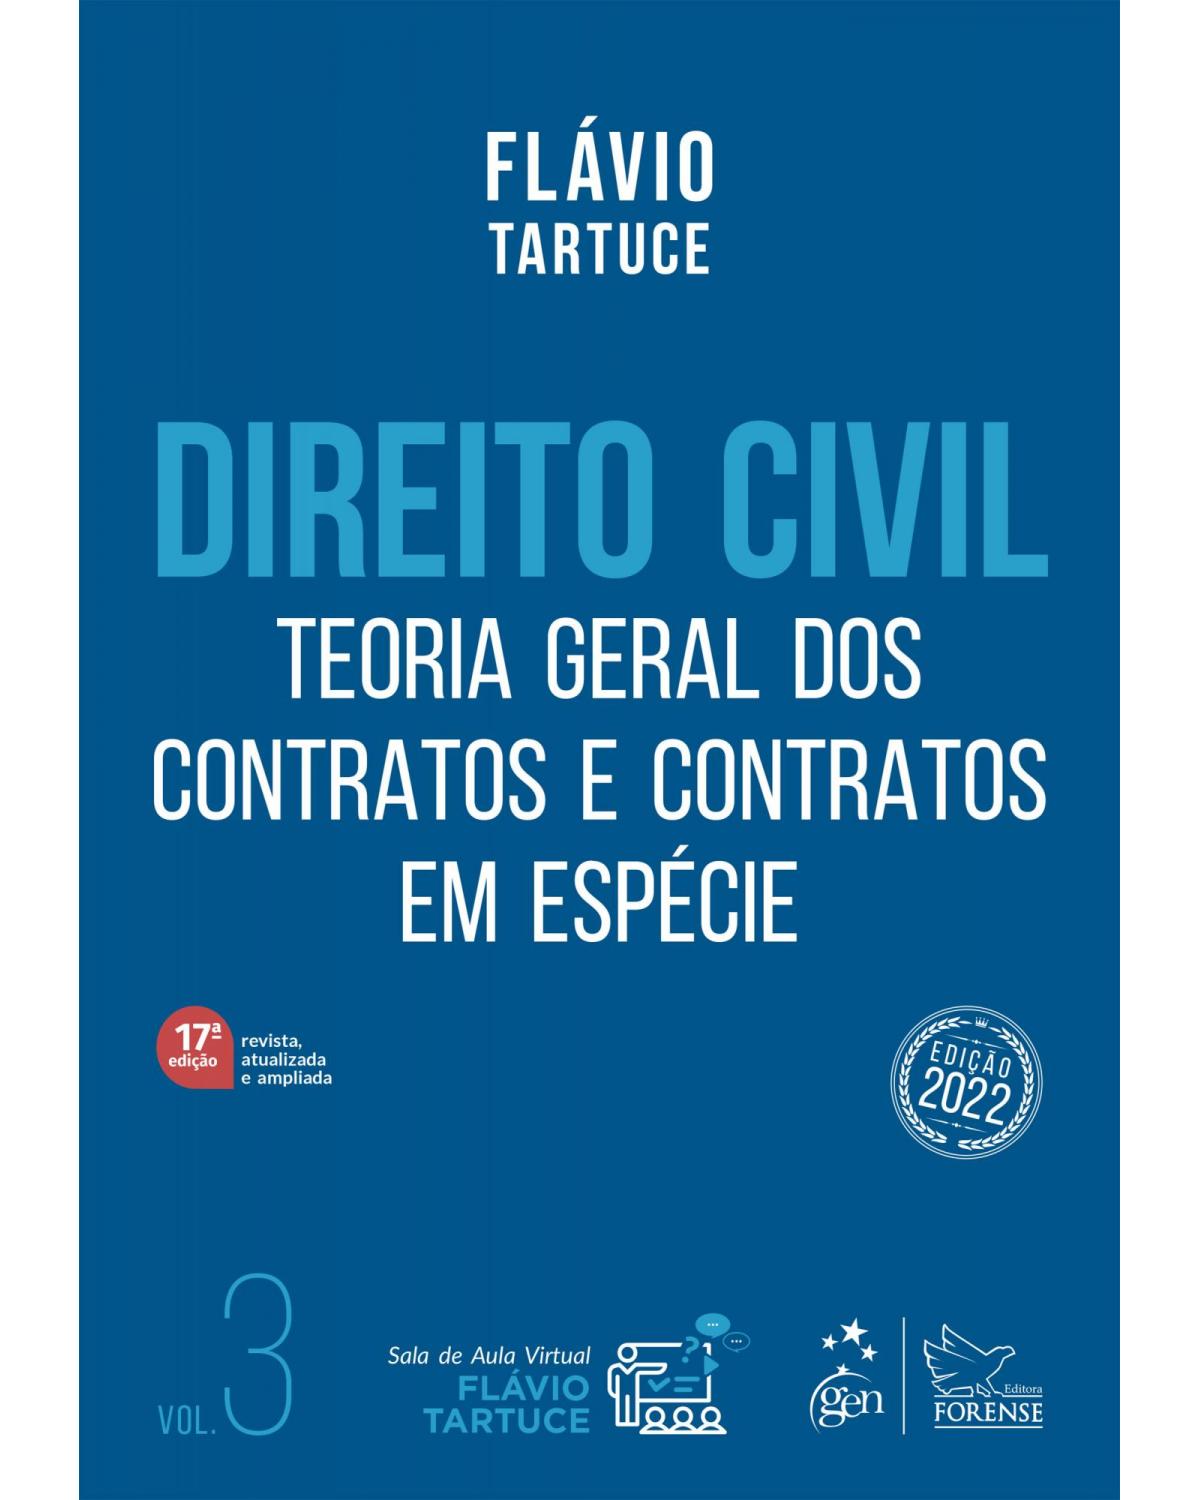 Direito civil - Teoria geral dos contratos e contratos em espécie - Volume 3:  - 17ª Edição | 2022